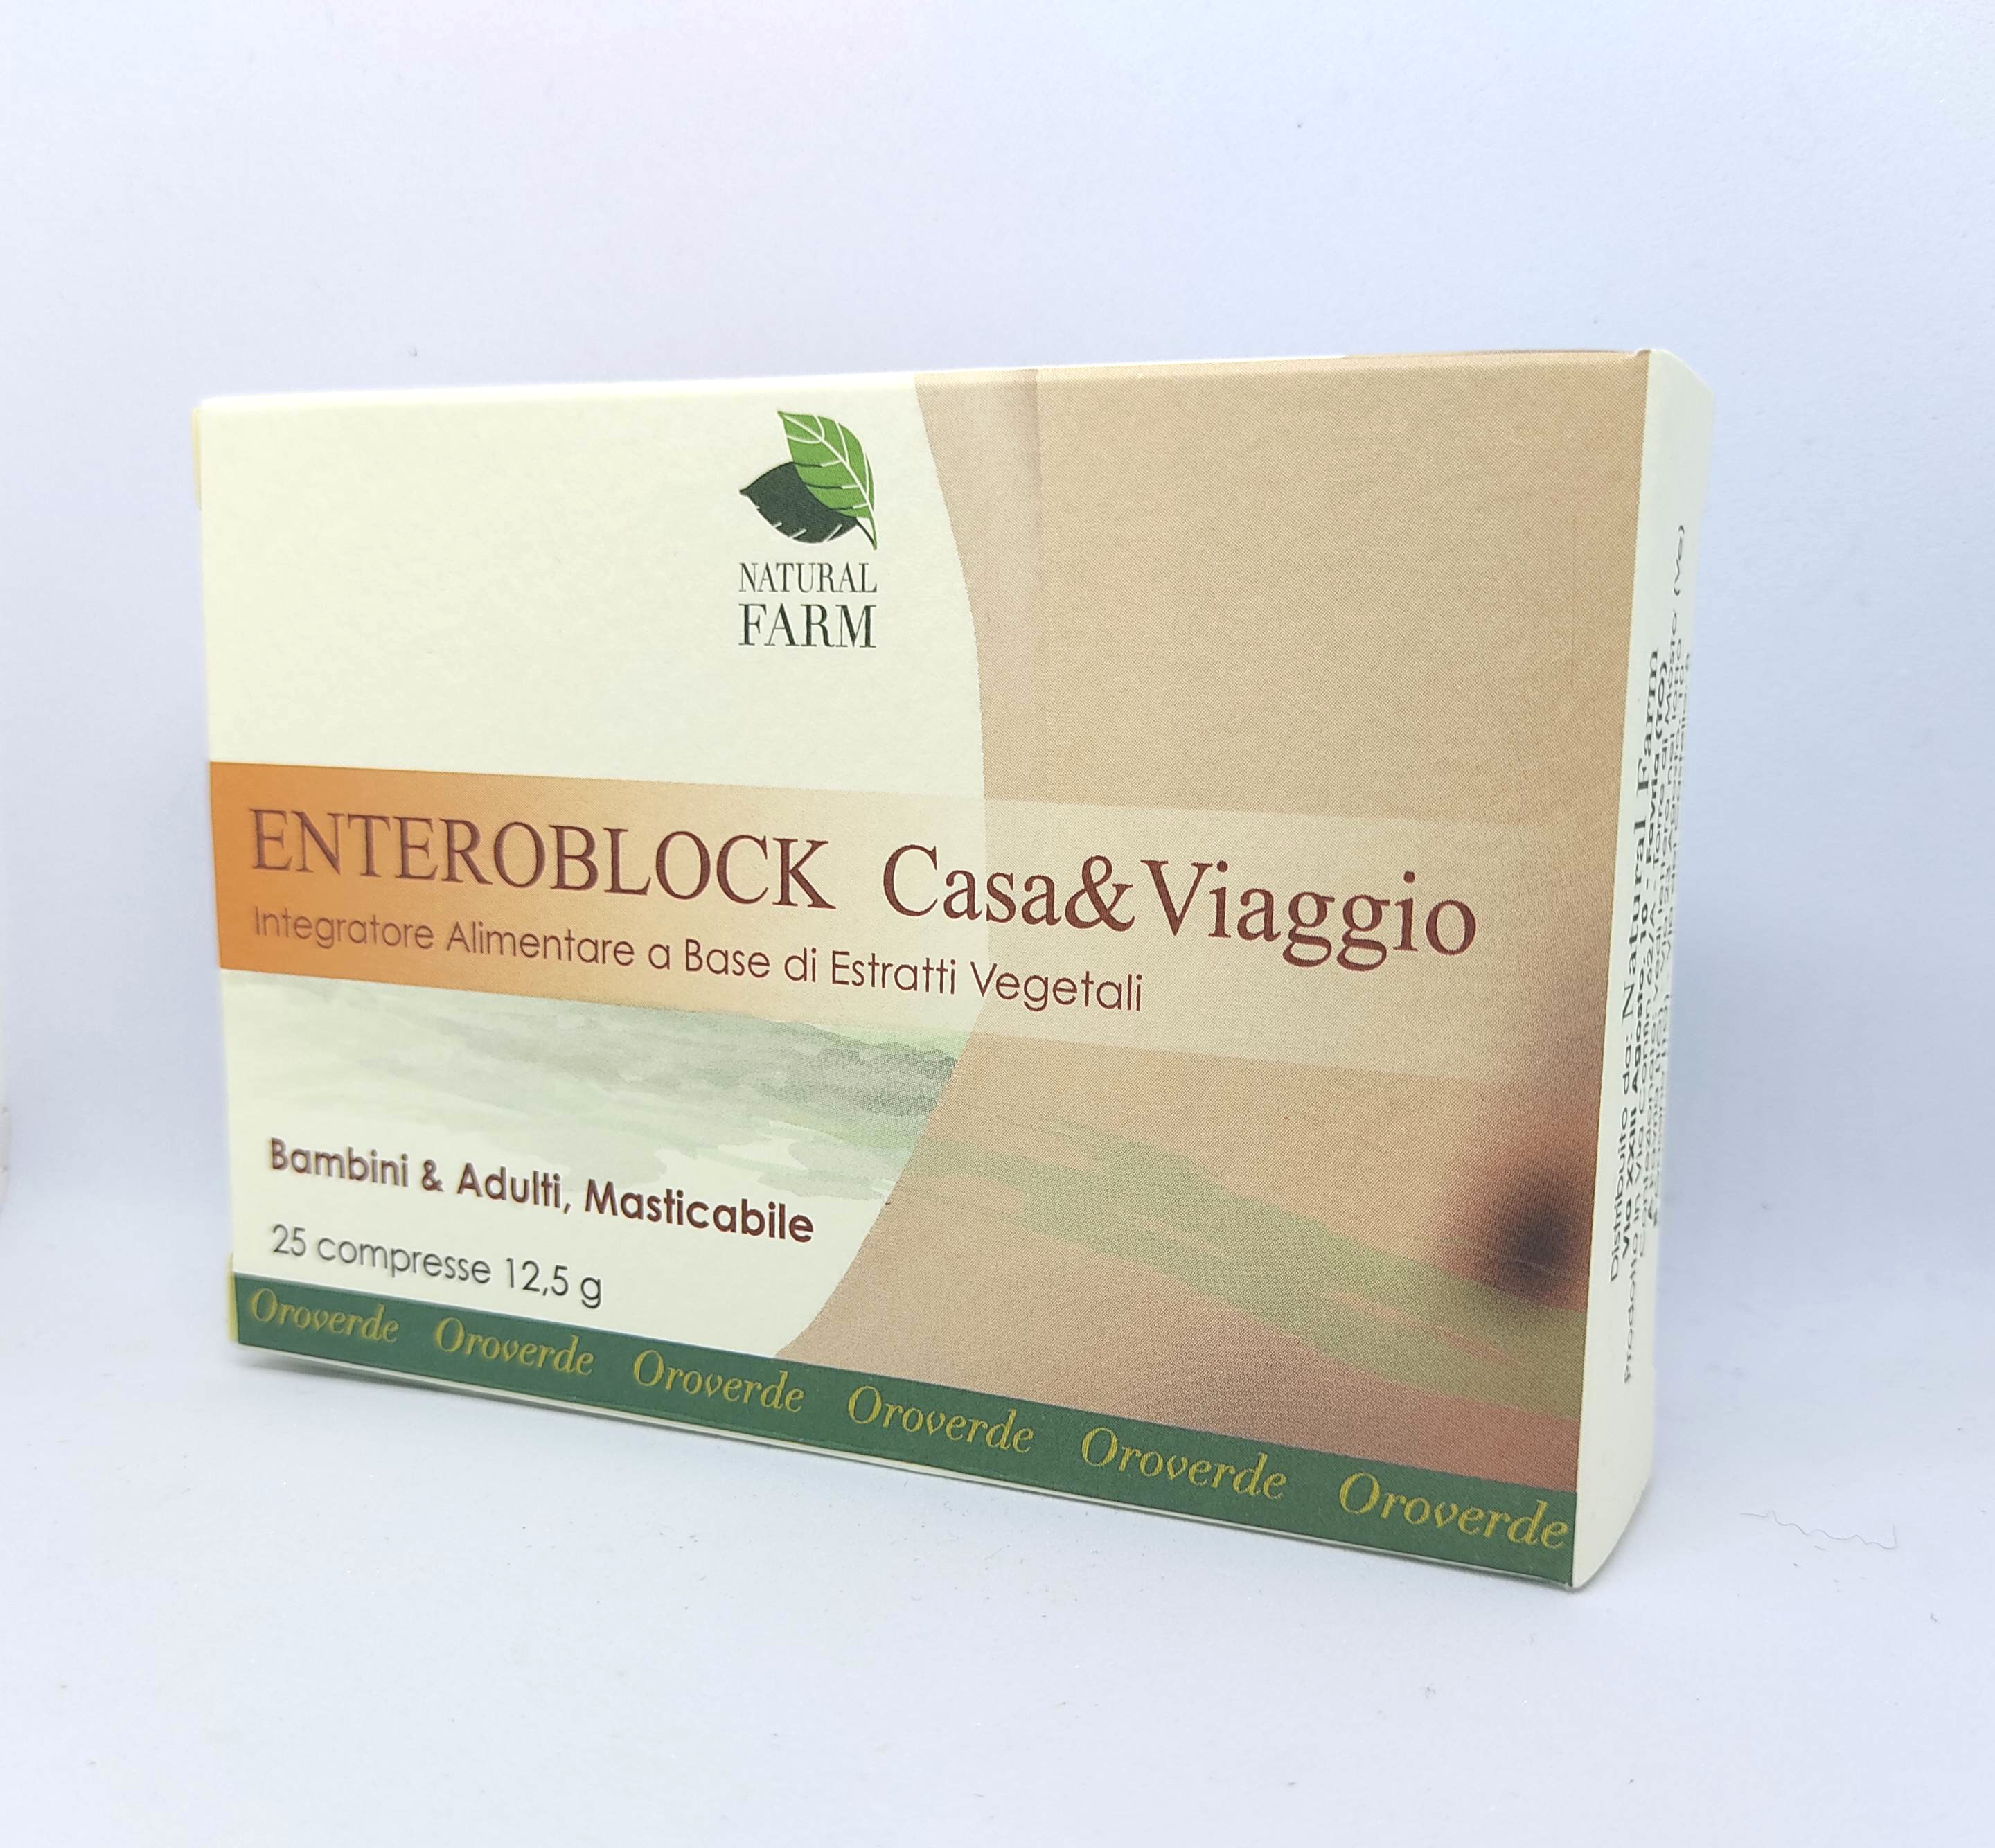 ENTEROBLOCK CASA & VIAGGIO